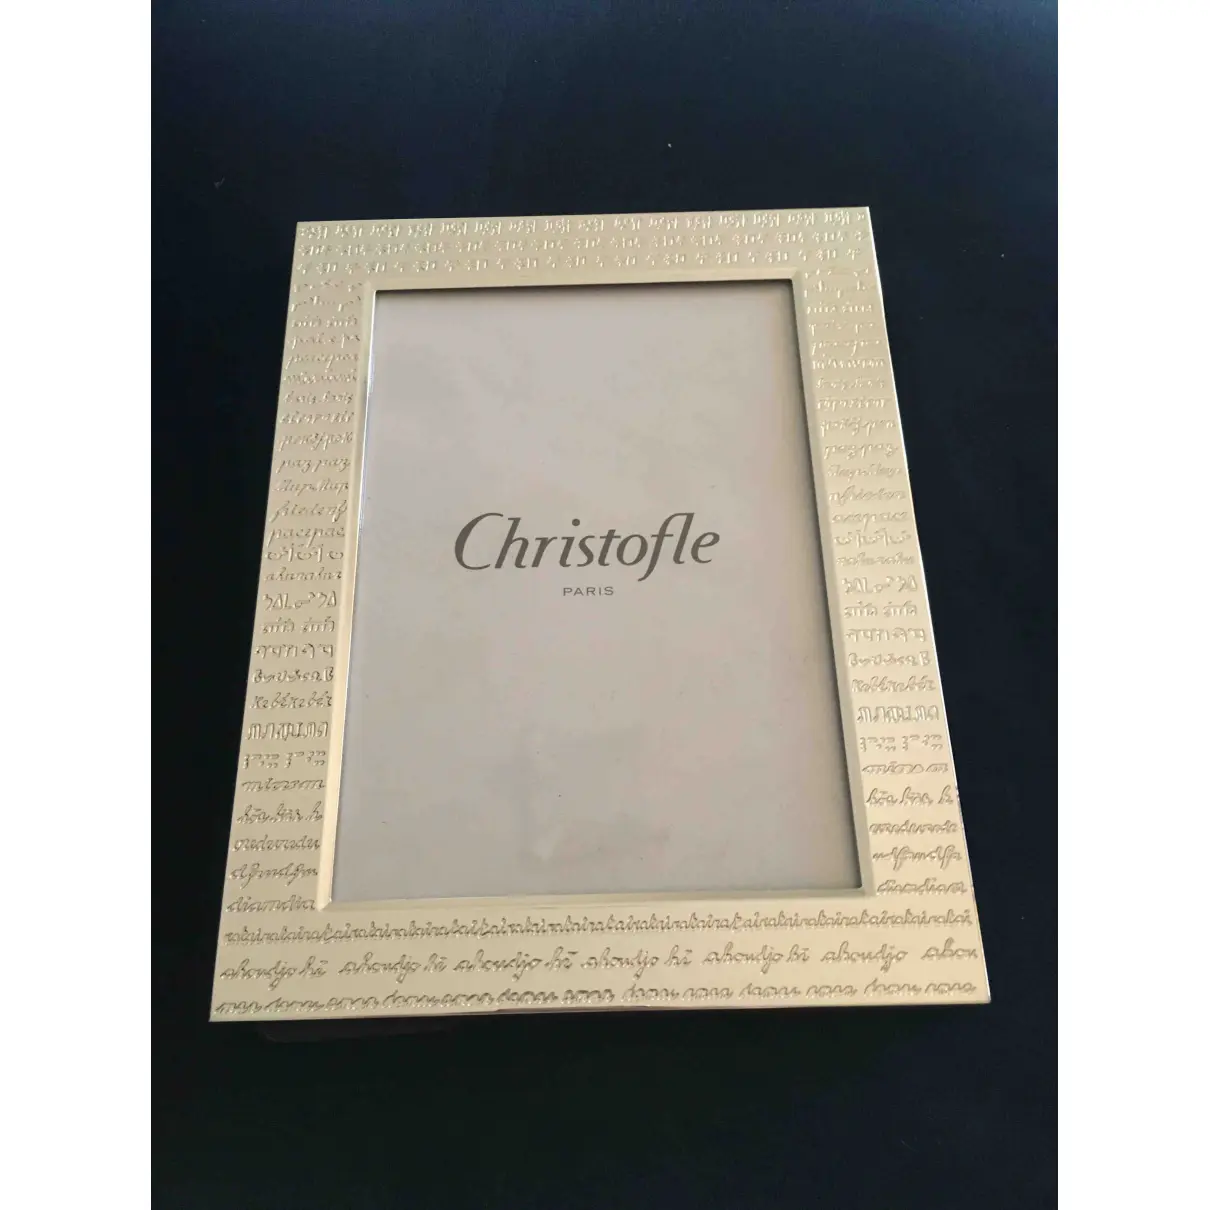 Buy Christofle Frame online